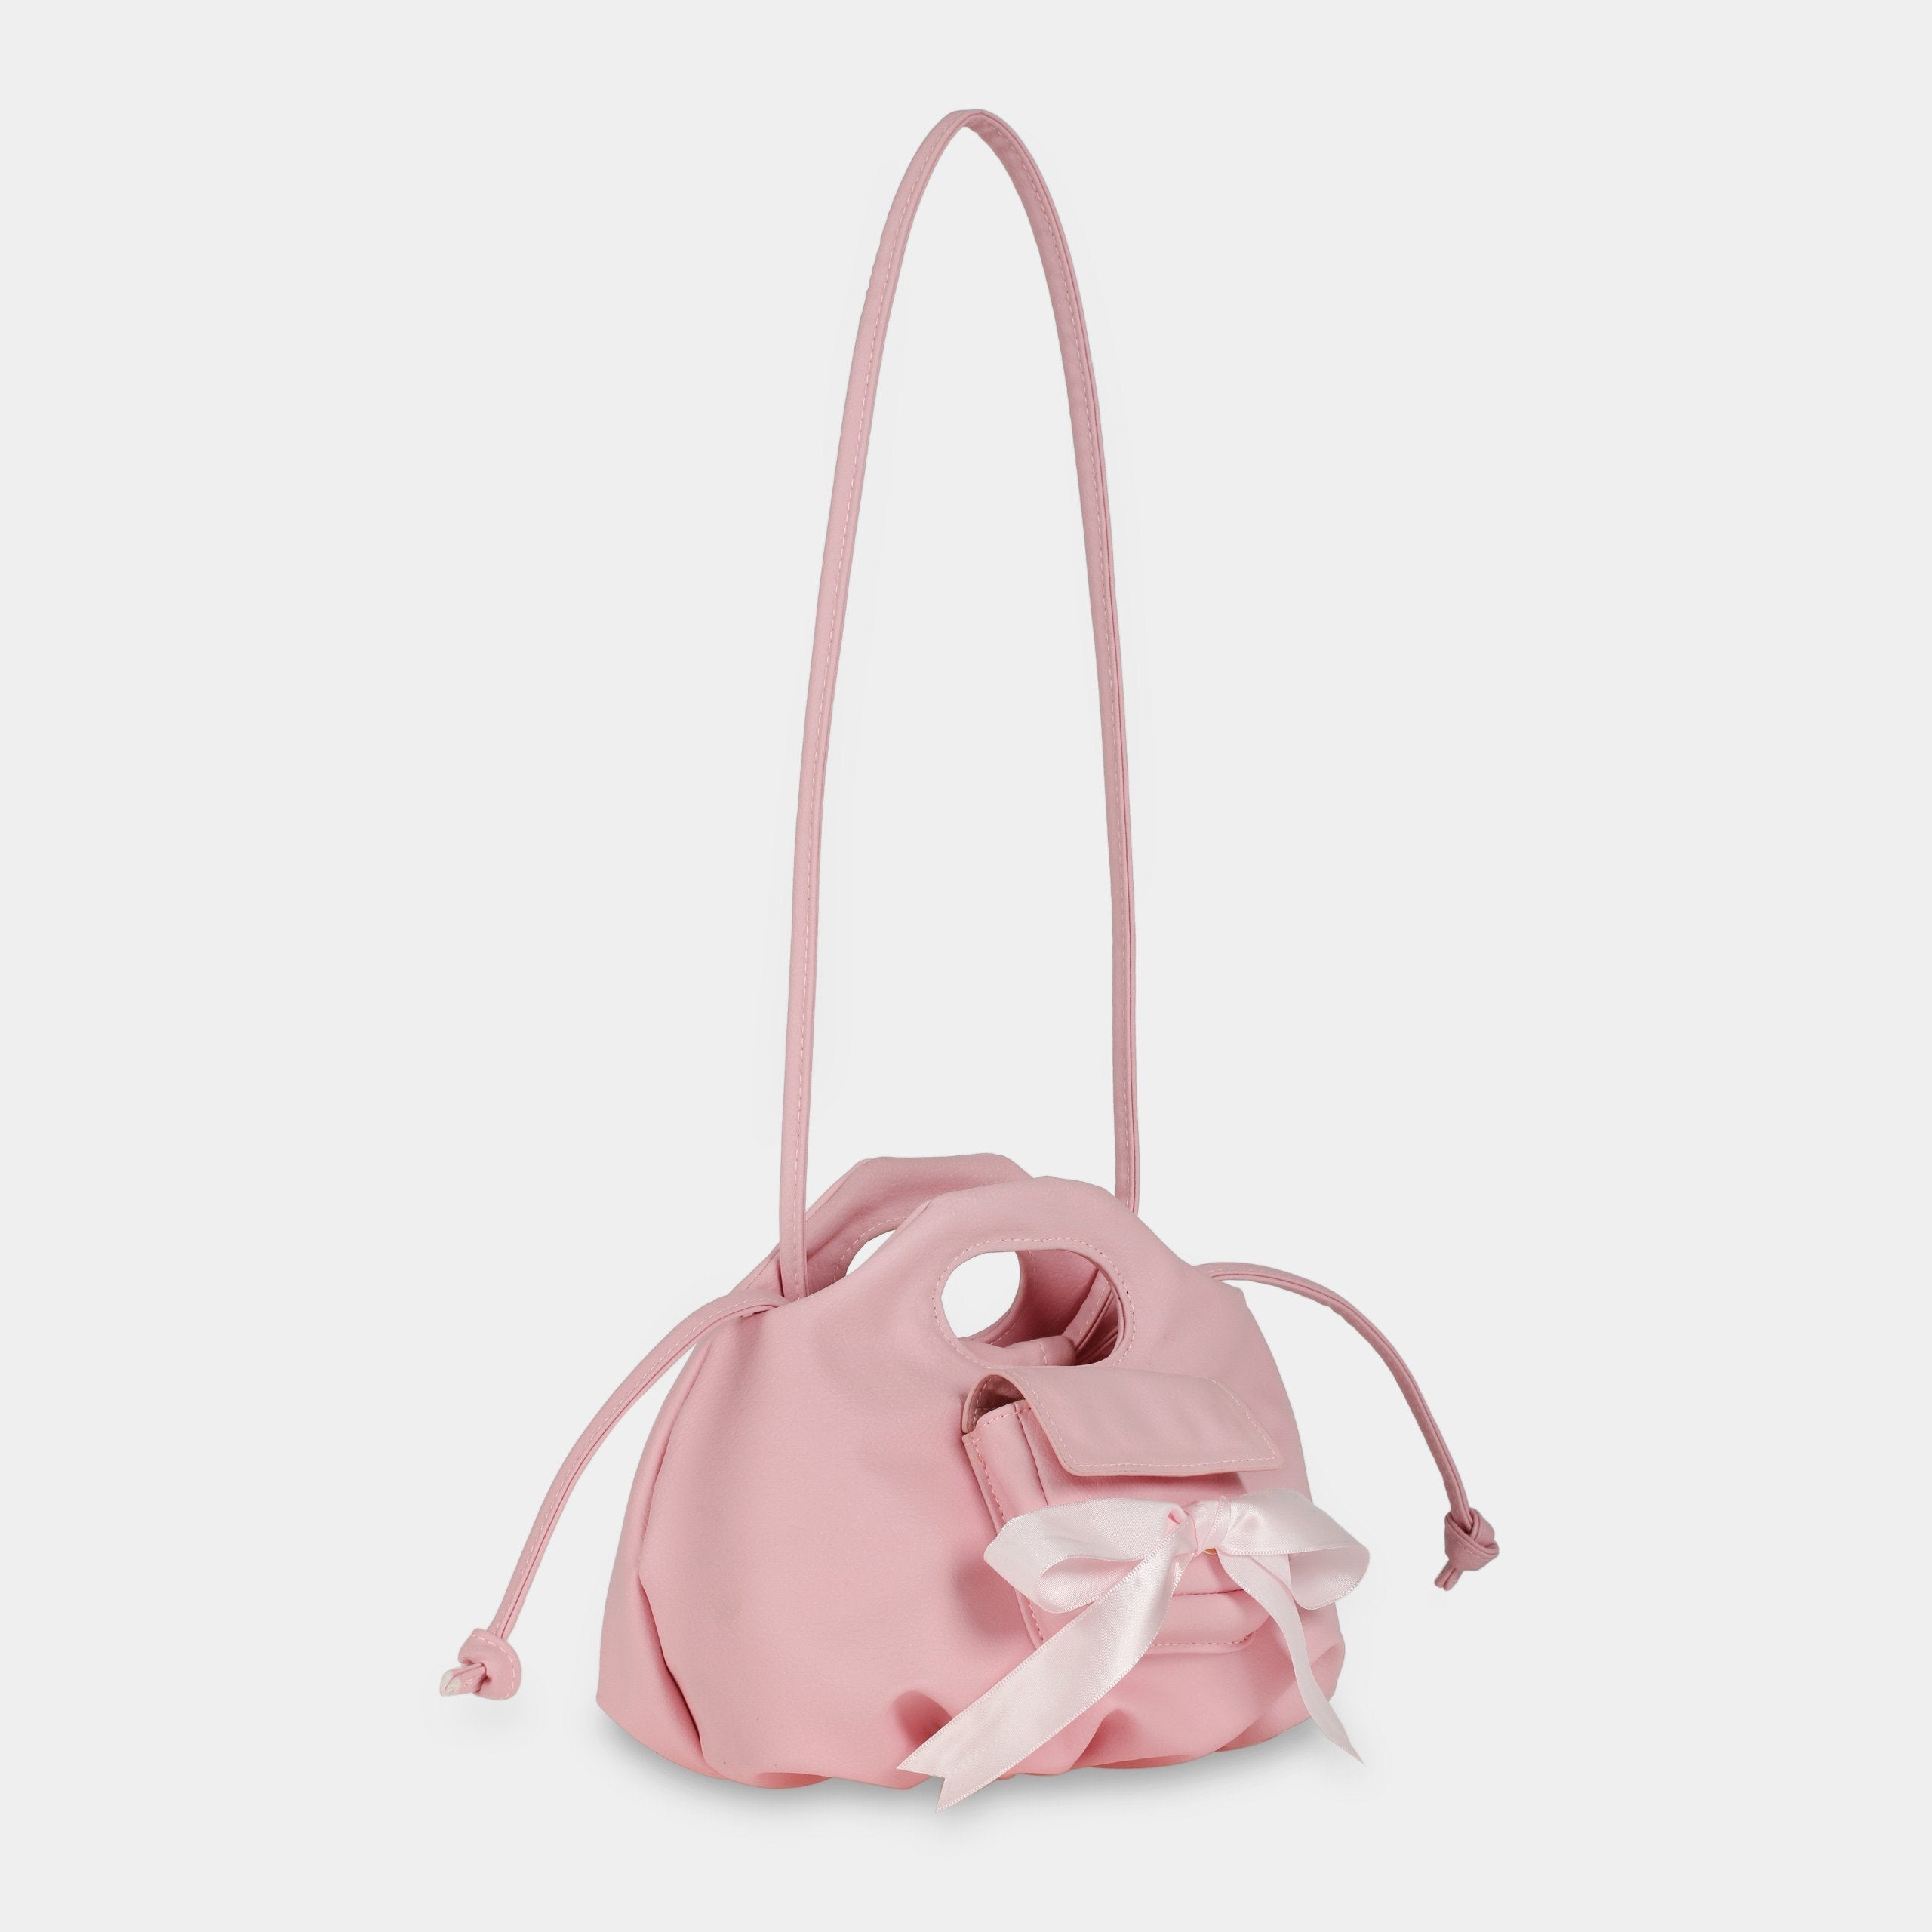 TÚI XÁCH Flower Mini Pocket & Bow màu hồng